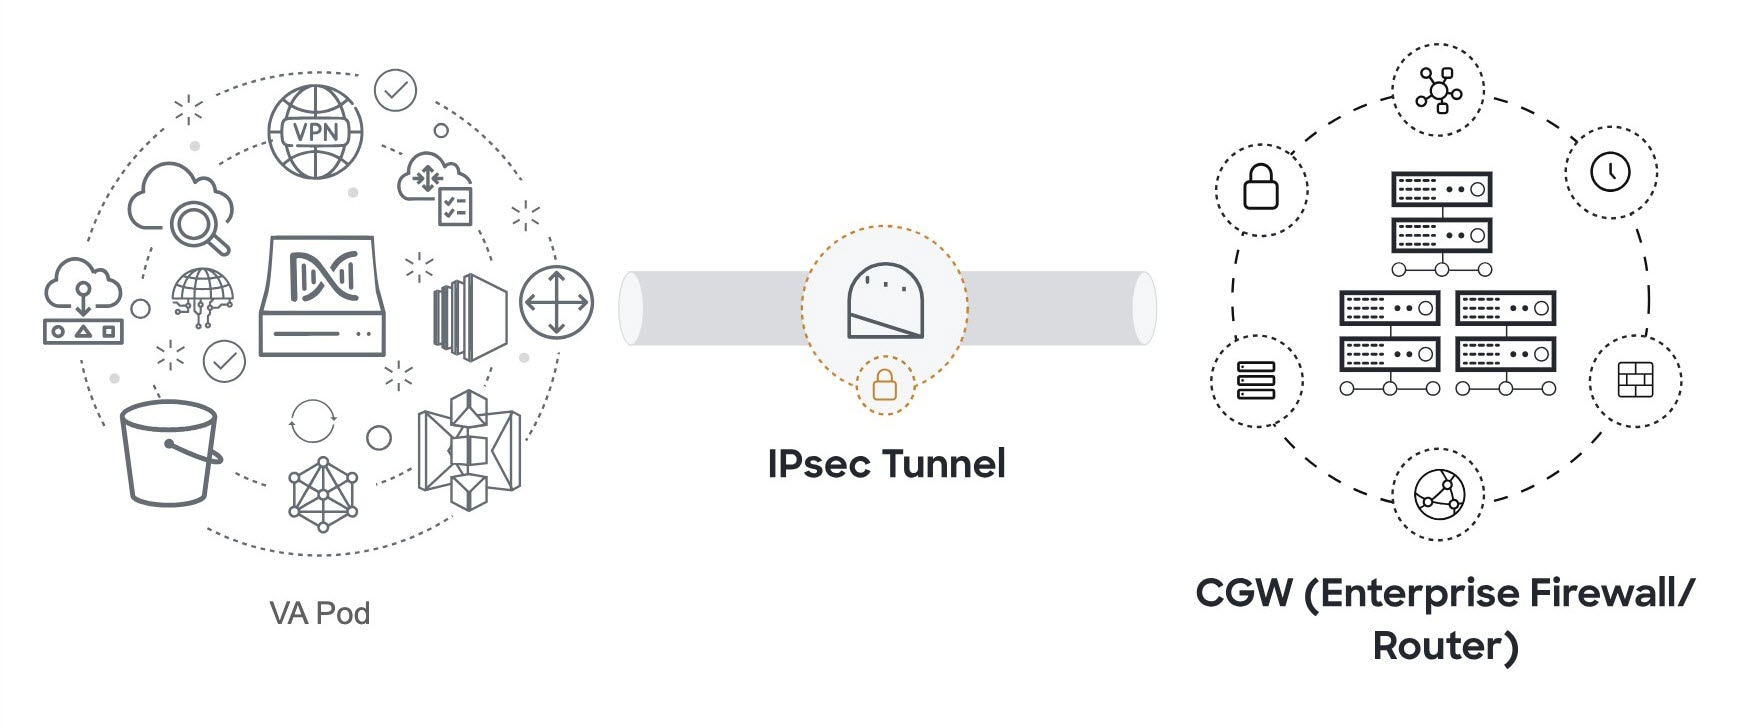 VA ポッドとエンタープライズ ファイアウォールまたはルータを接続する IPsec トンネルは、設定されていないことを意味する南京錠の付いた灰色になっています。